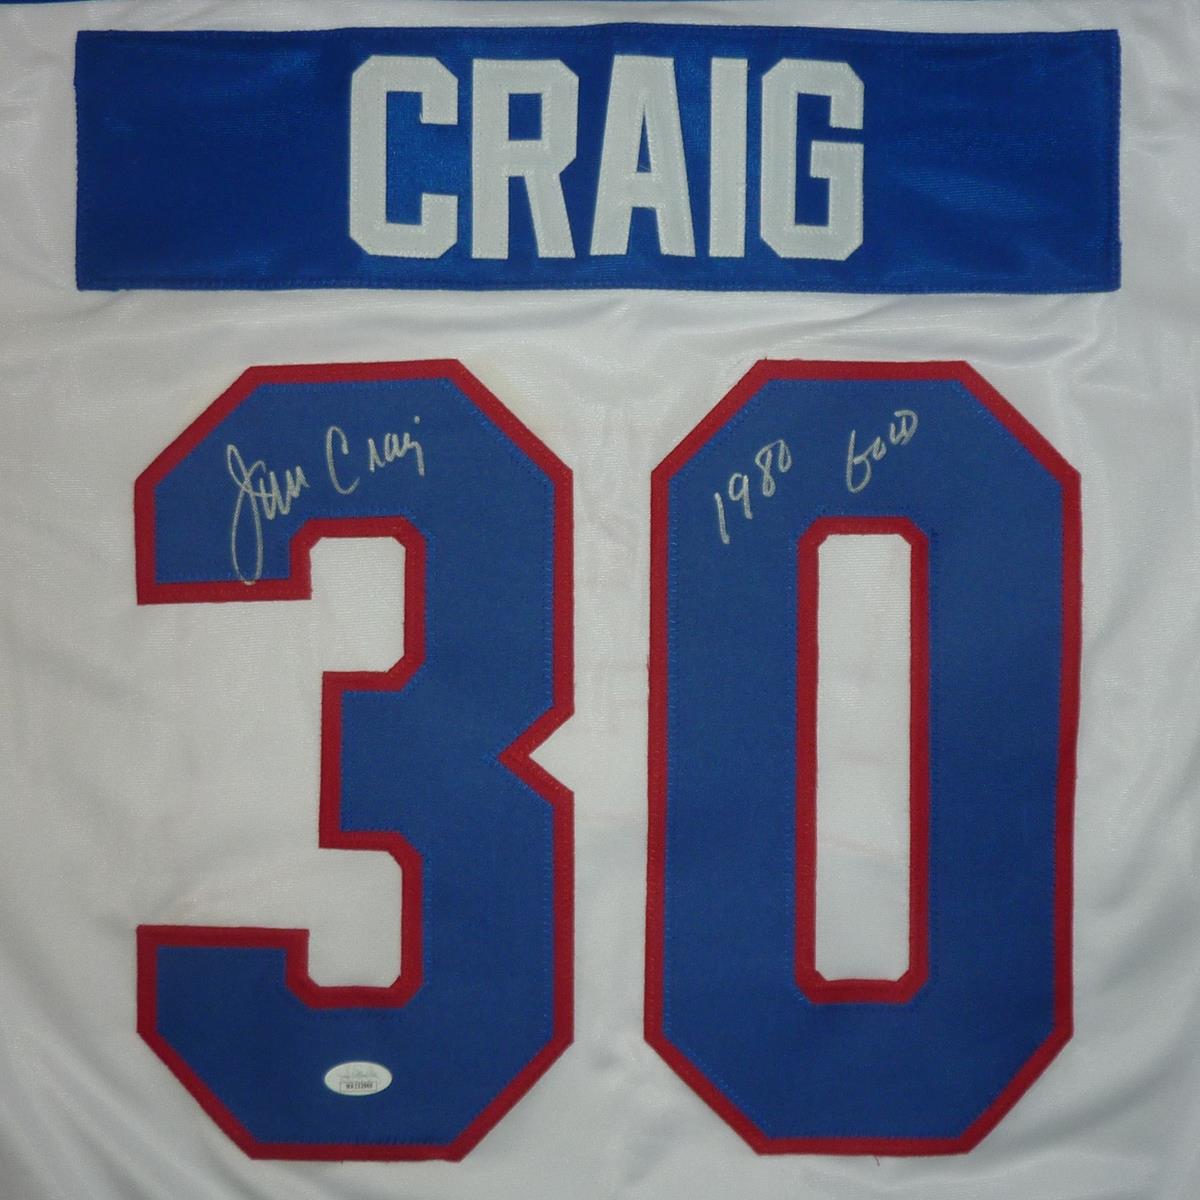 Jim Craig #30 USA Hokcey Jersey  Jim craig, Hockey jersey, Jersey